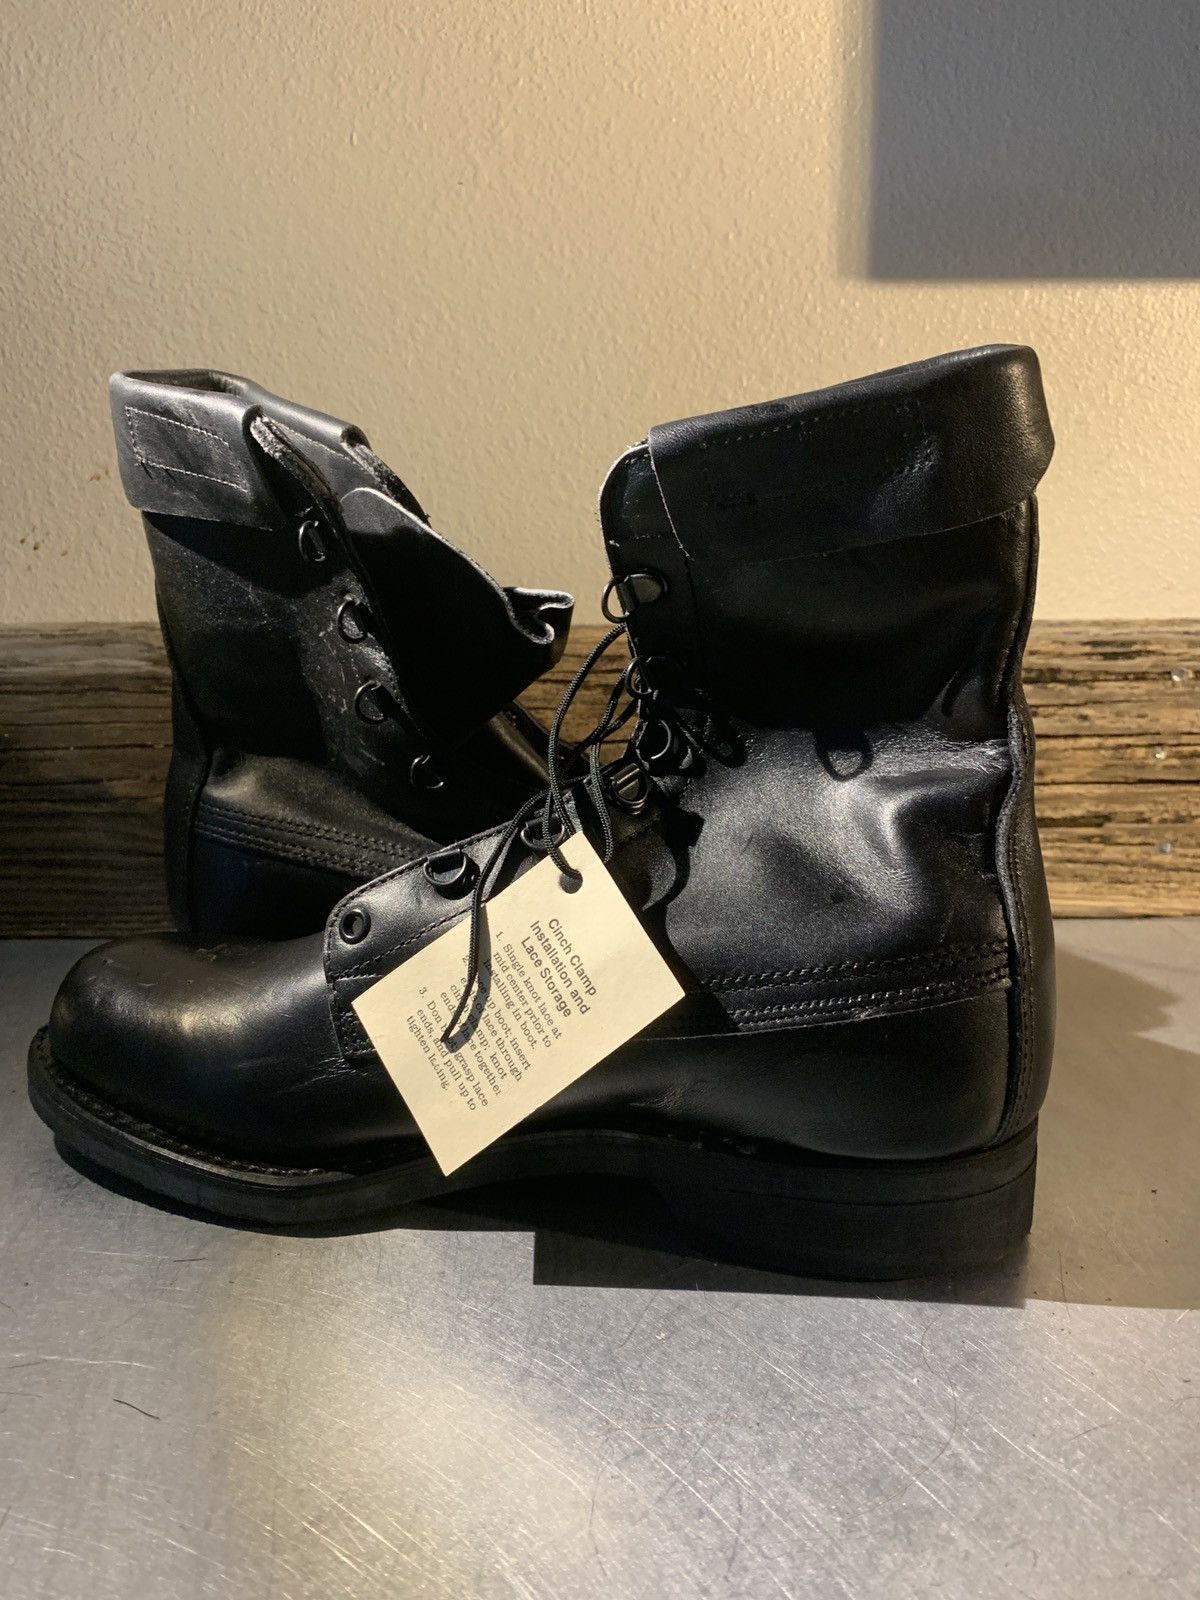 Vintage Addison Shoe Co Vintage Black Leather Military Combat Boots ...